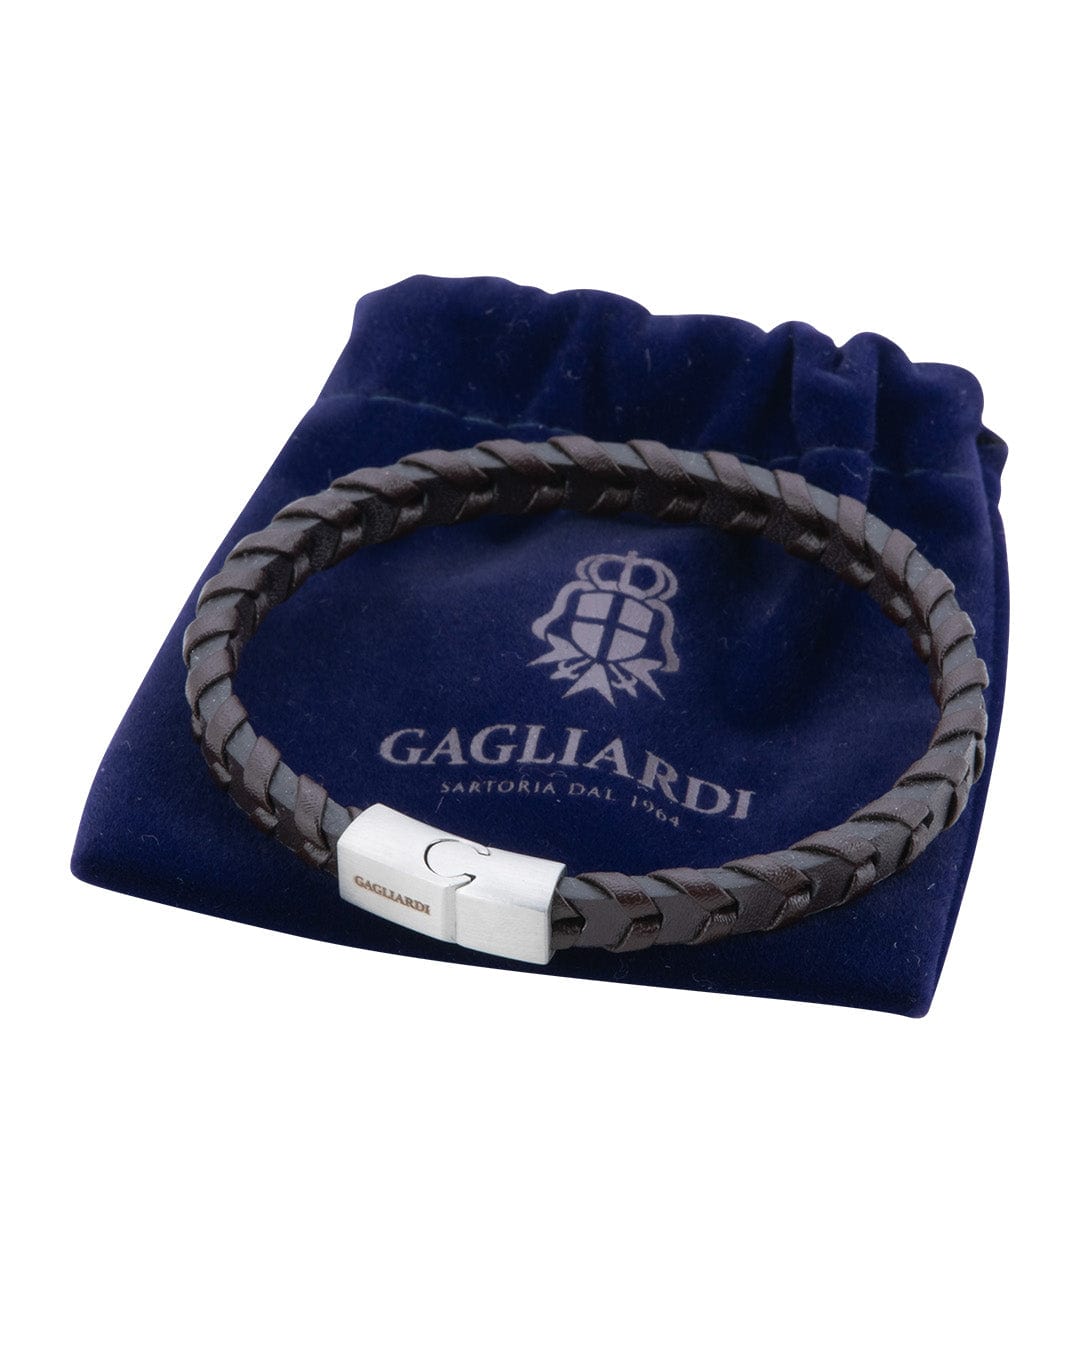 Gagliardi Bracelets Gagliardi Brown Braided Leather Bracelet With Brushed Steel Clasp